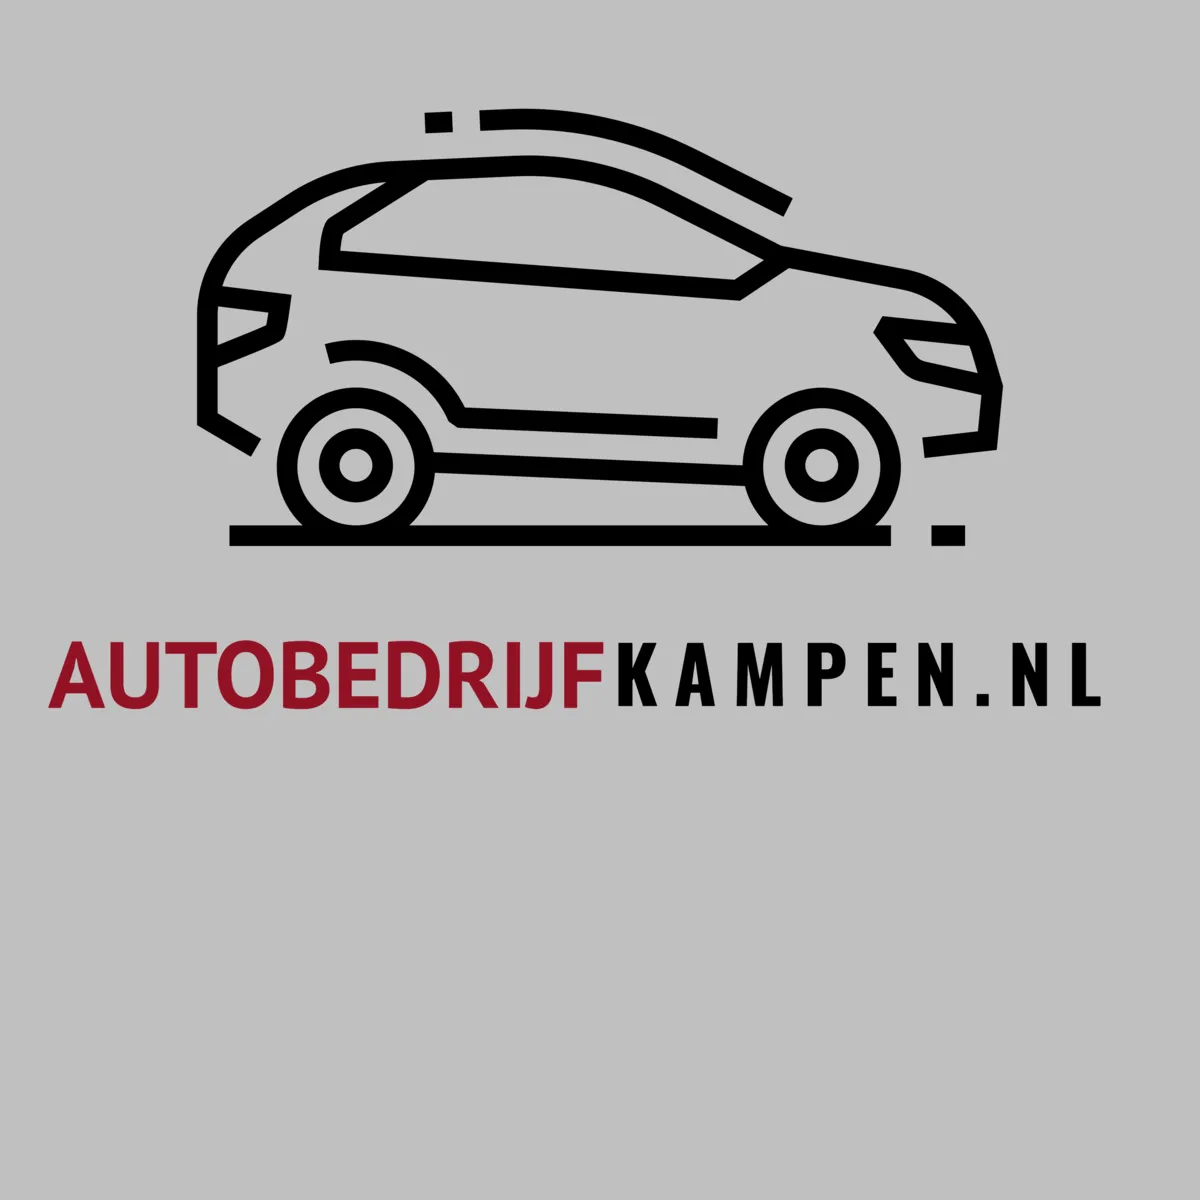 AutobedrijfKampen.nl